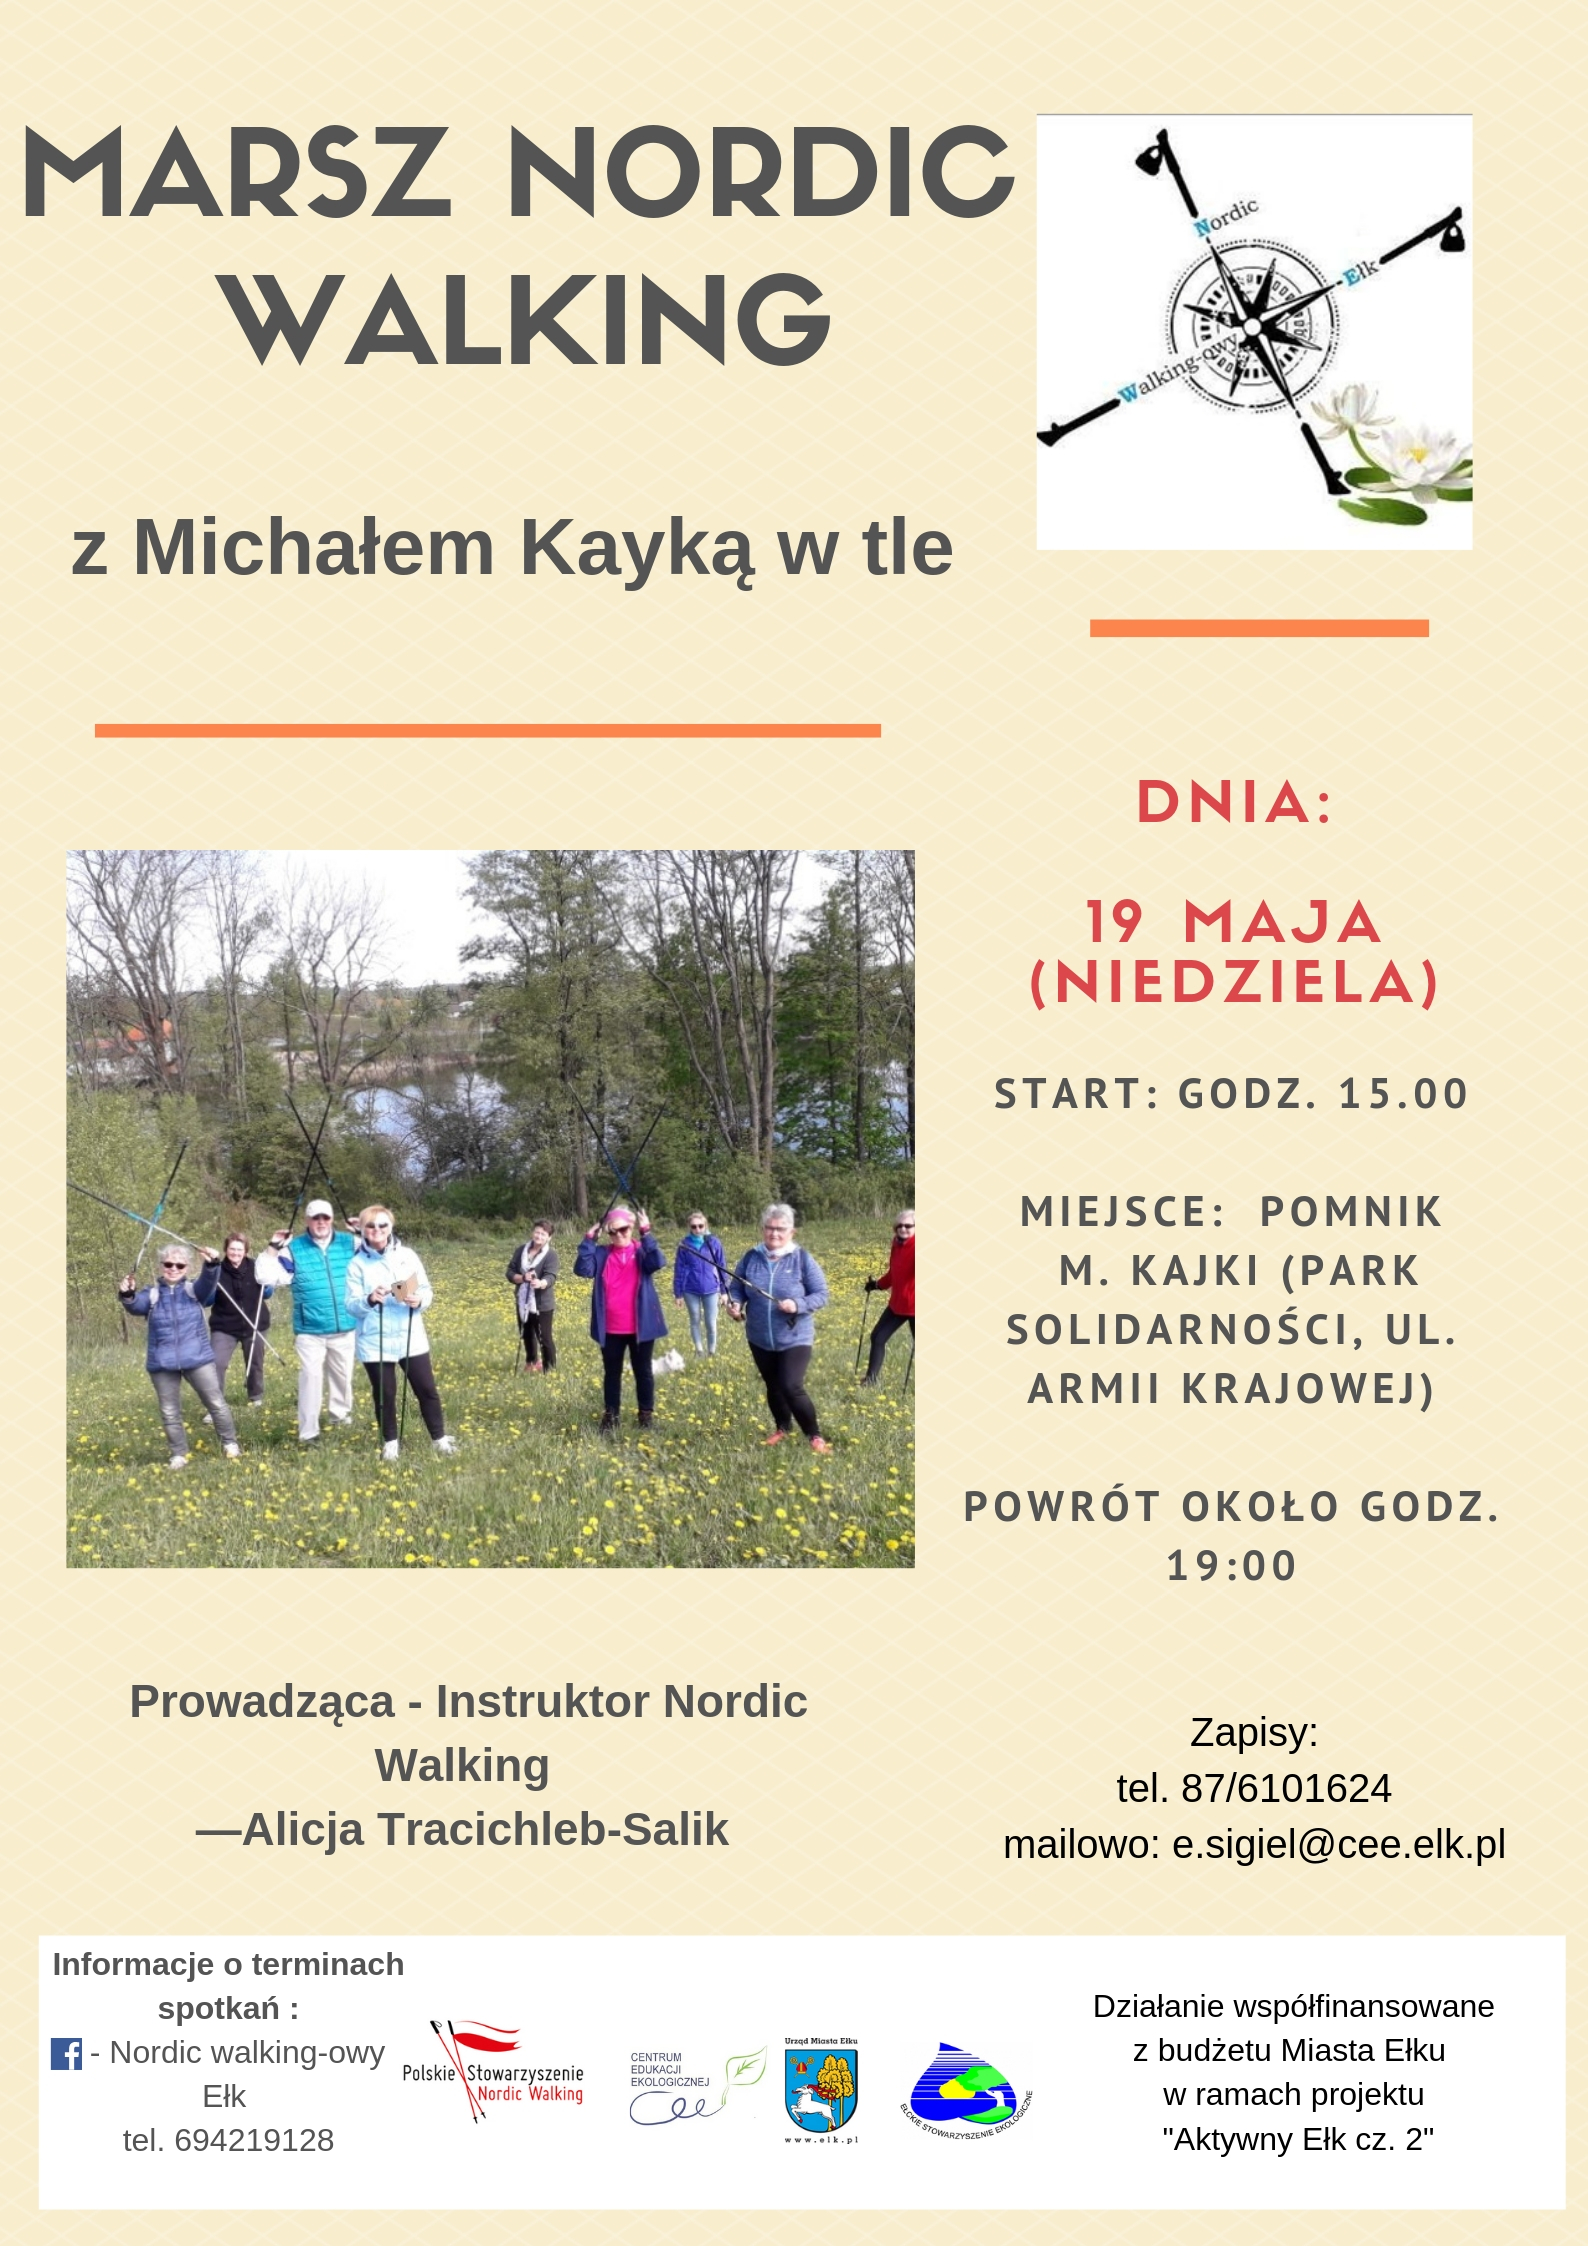 Marsz Nordic Walking z Michałem Kayką w tle